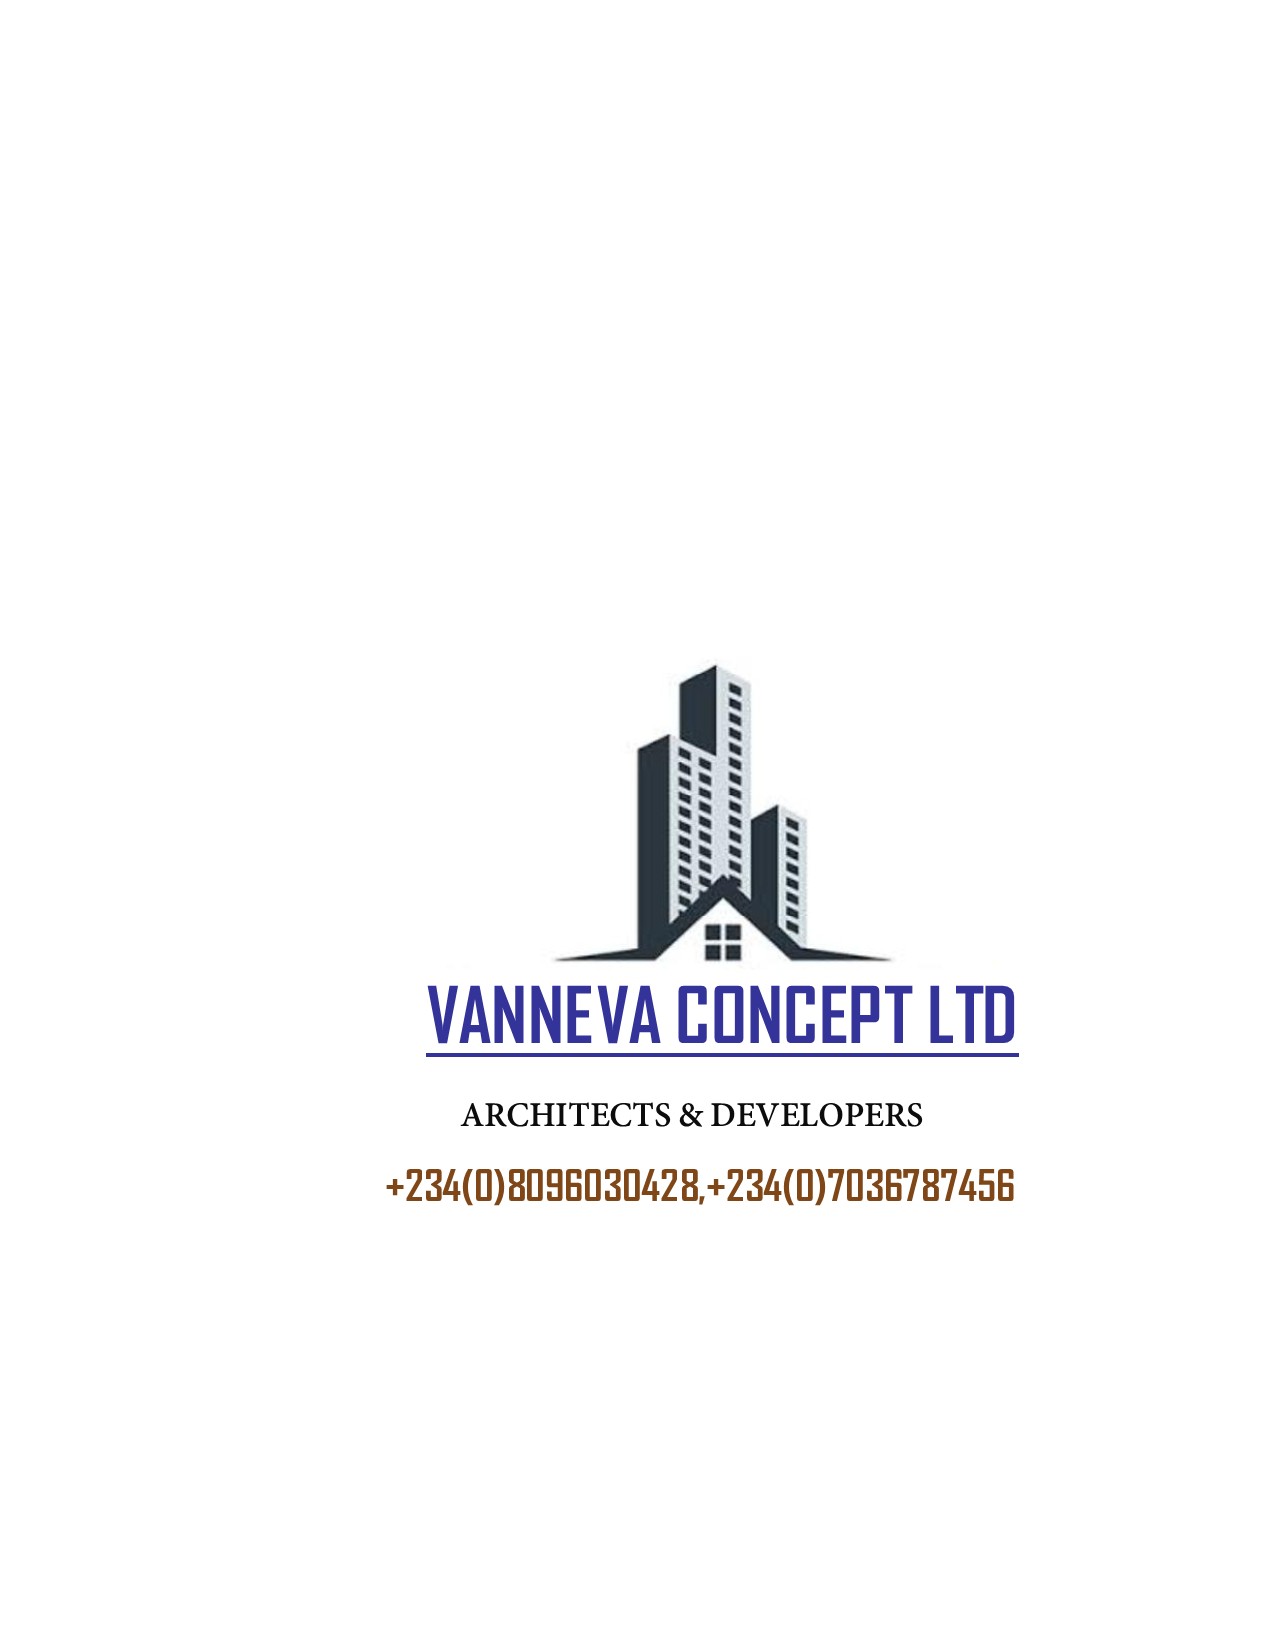 Vanneva Concept Ltd provider